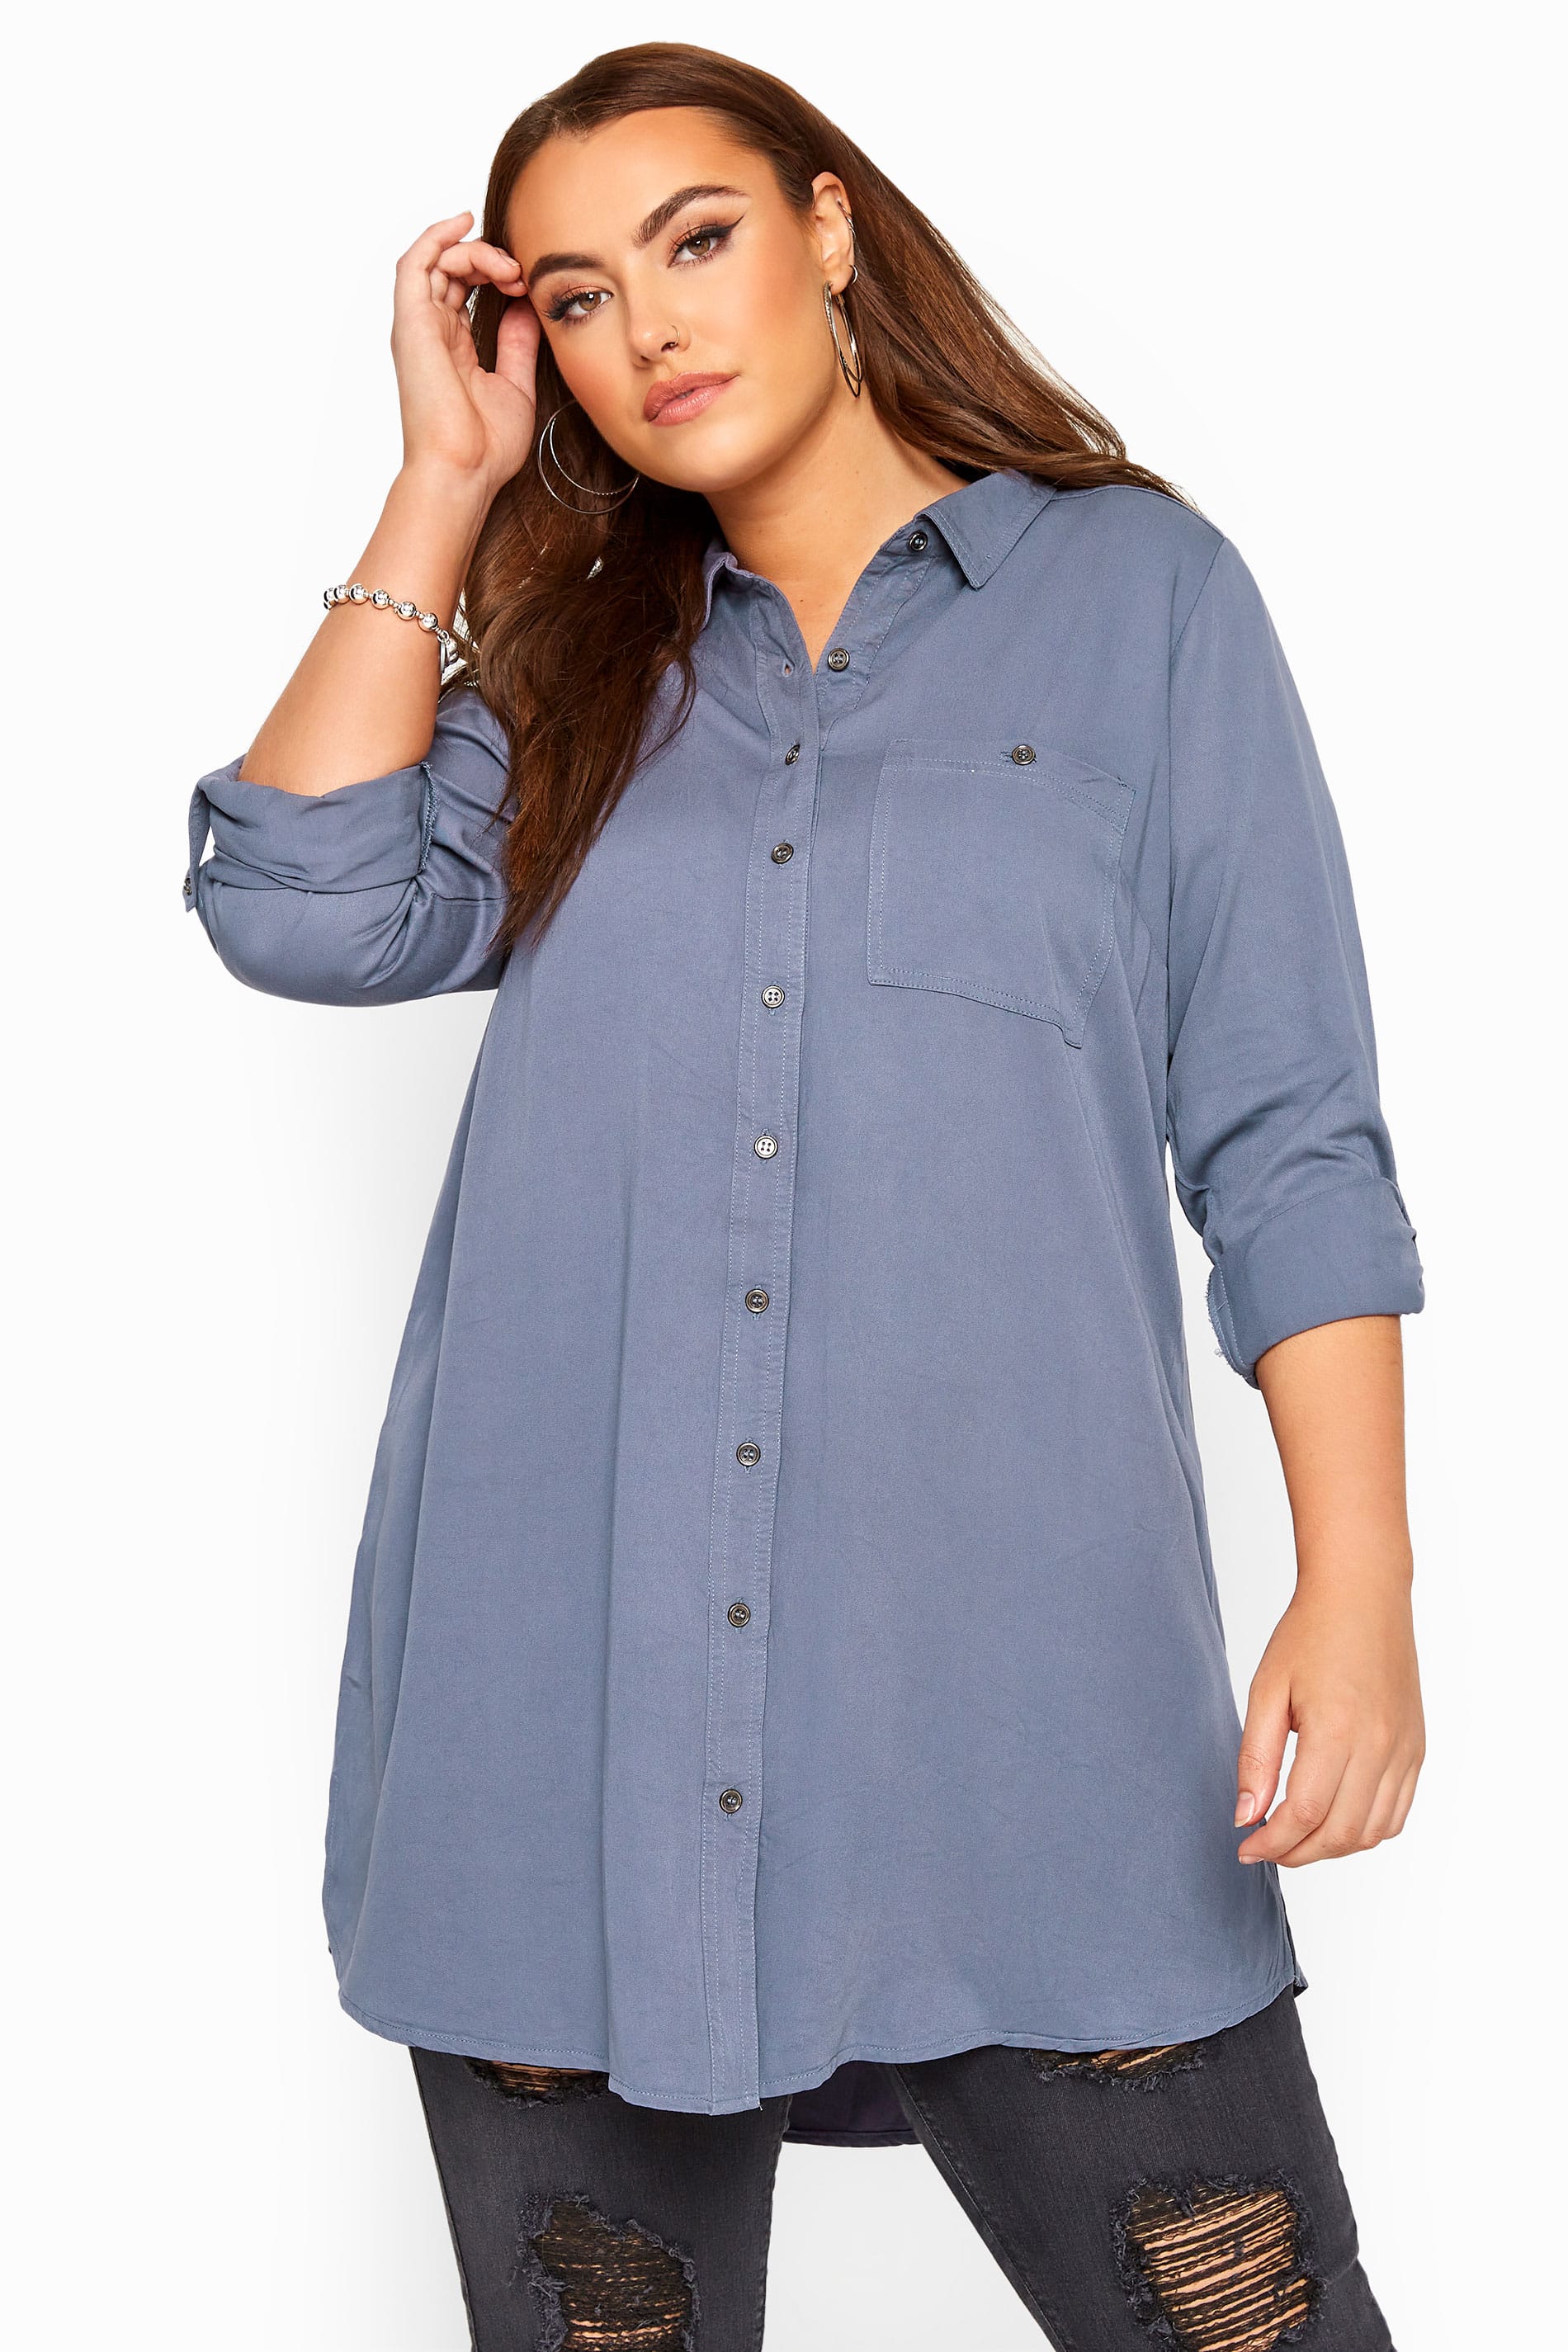 Blue-Grey Oversized Boyfriend Shirt | Sizes 16 to 36 | Yours Clothing